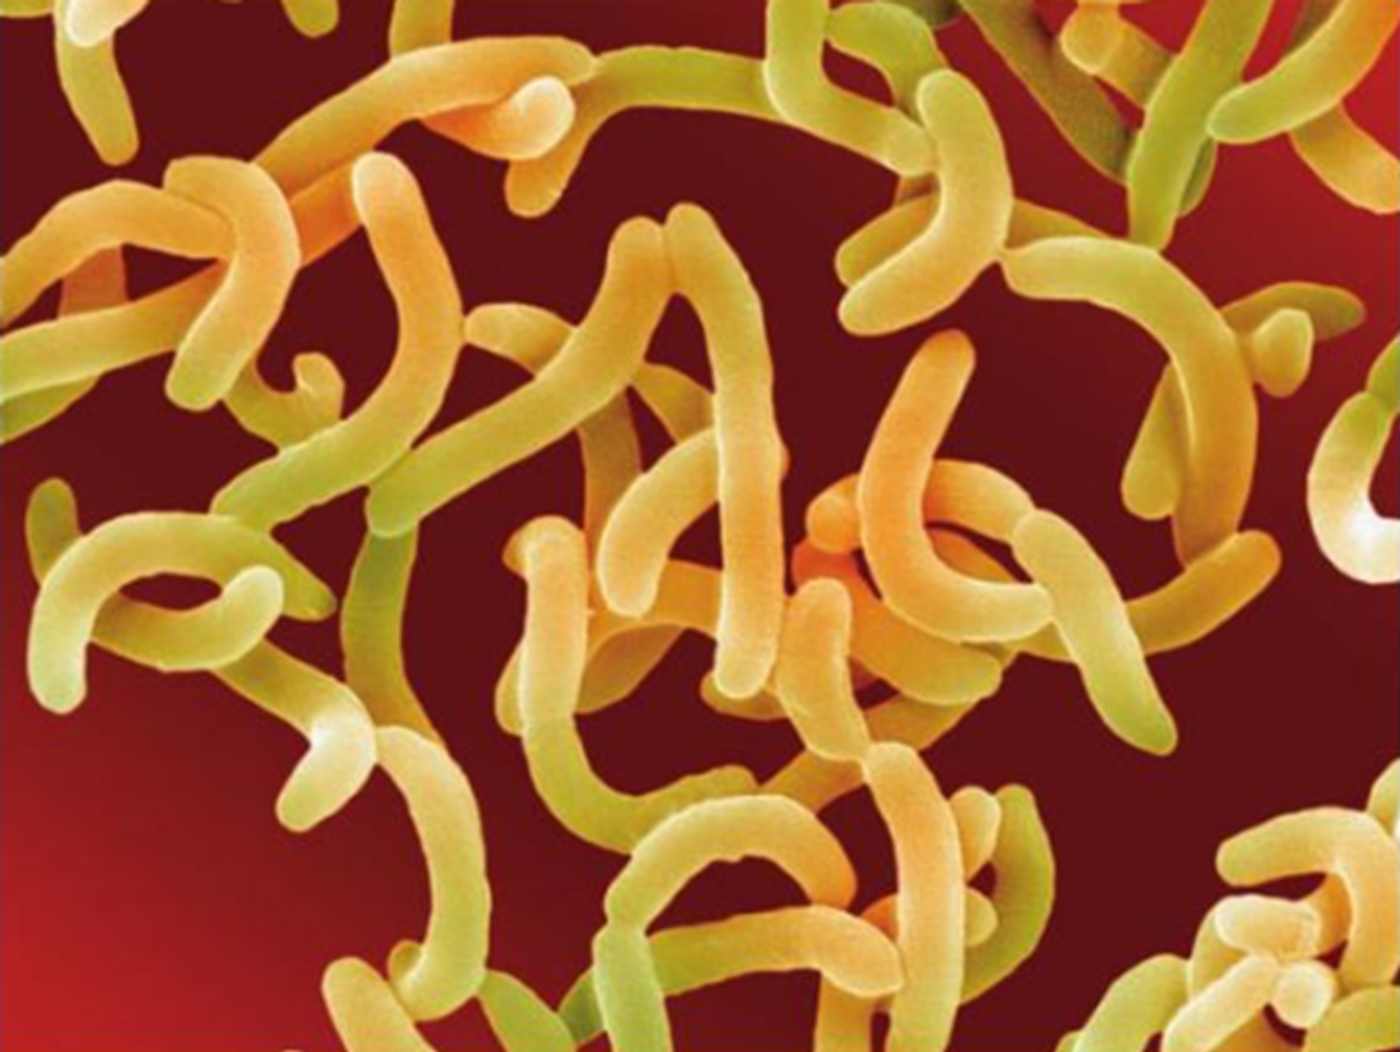 Vibrio cholerae causes cholera.